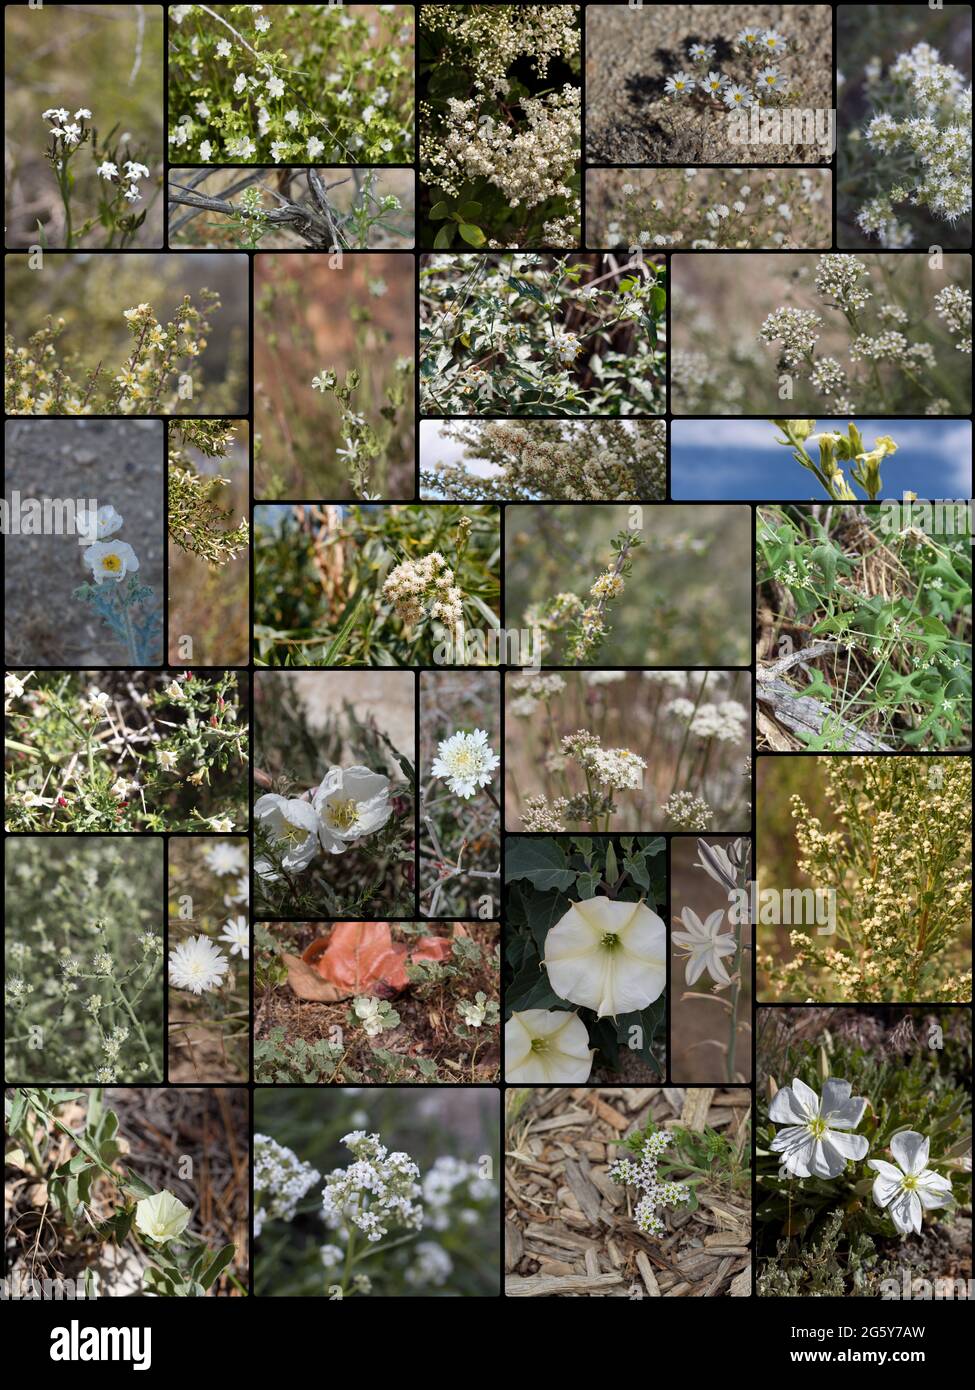 32 especies de plantas indígenas del sur de California que florecen blancas crecen silvestres en su hábitat nativo. Fotografiado durante 2020. Foto de stock